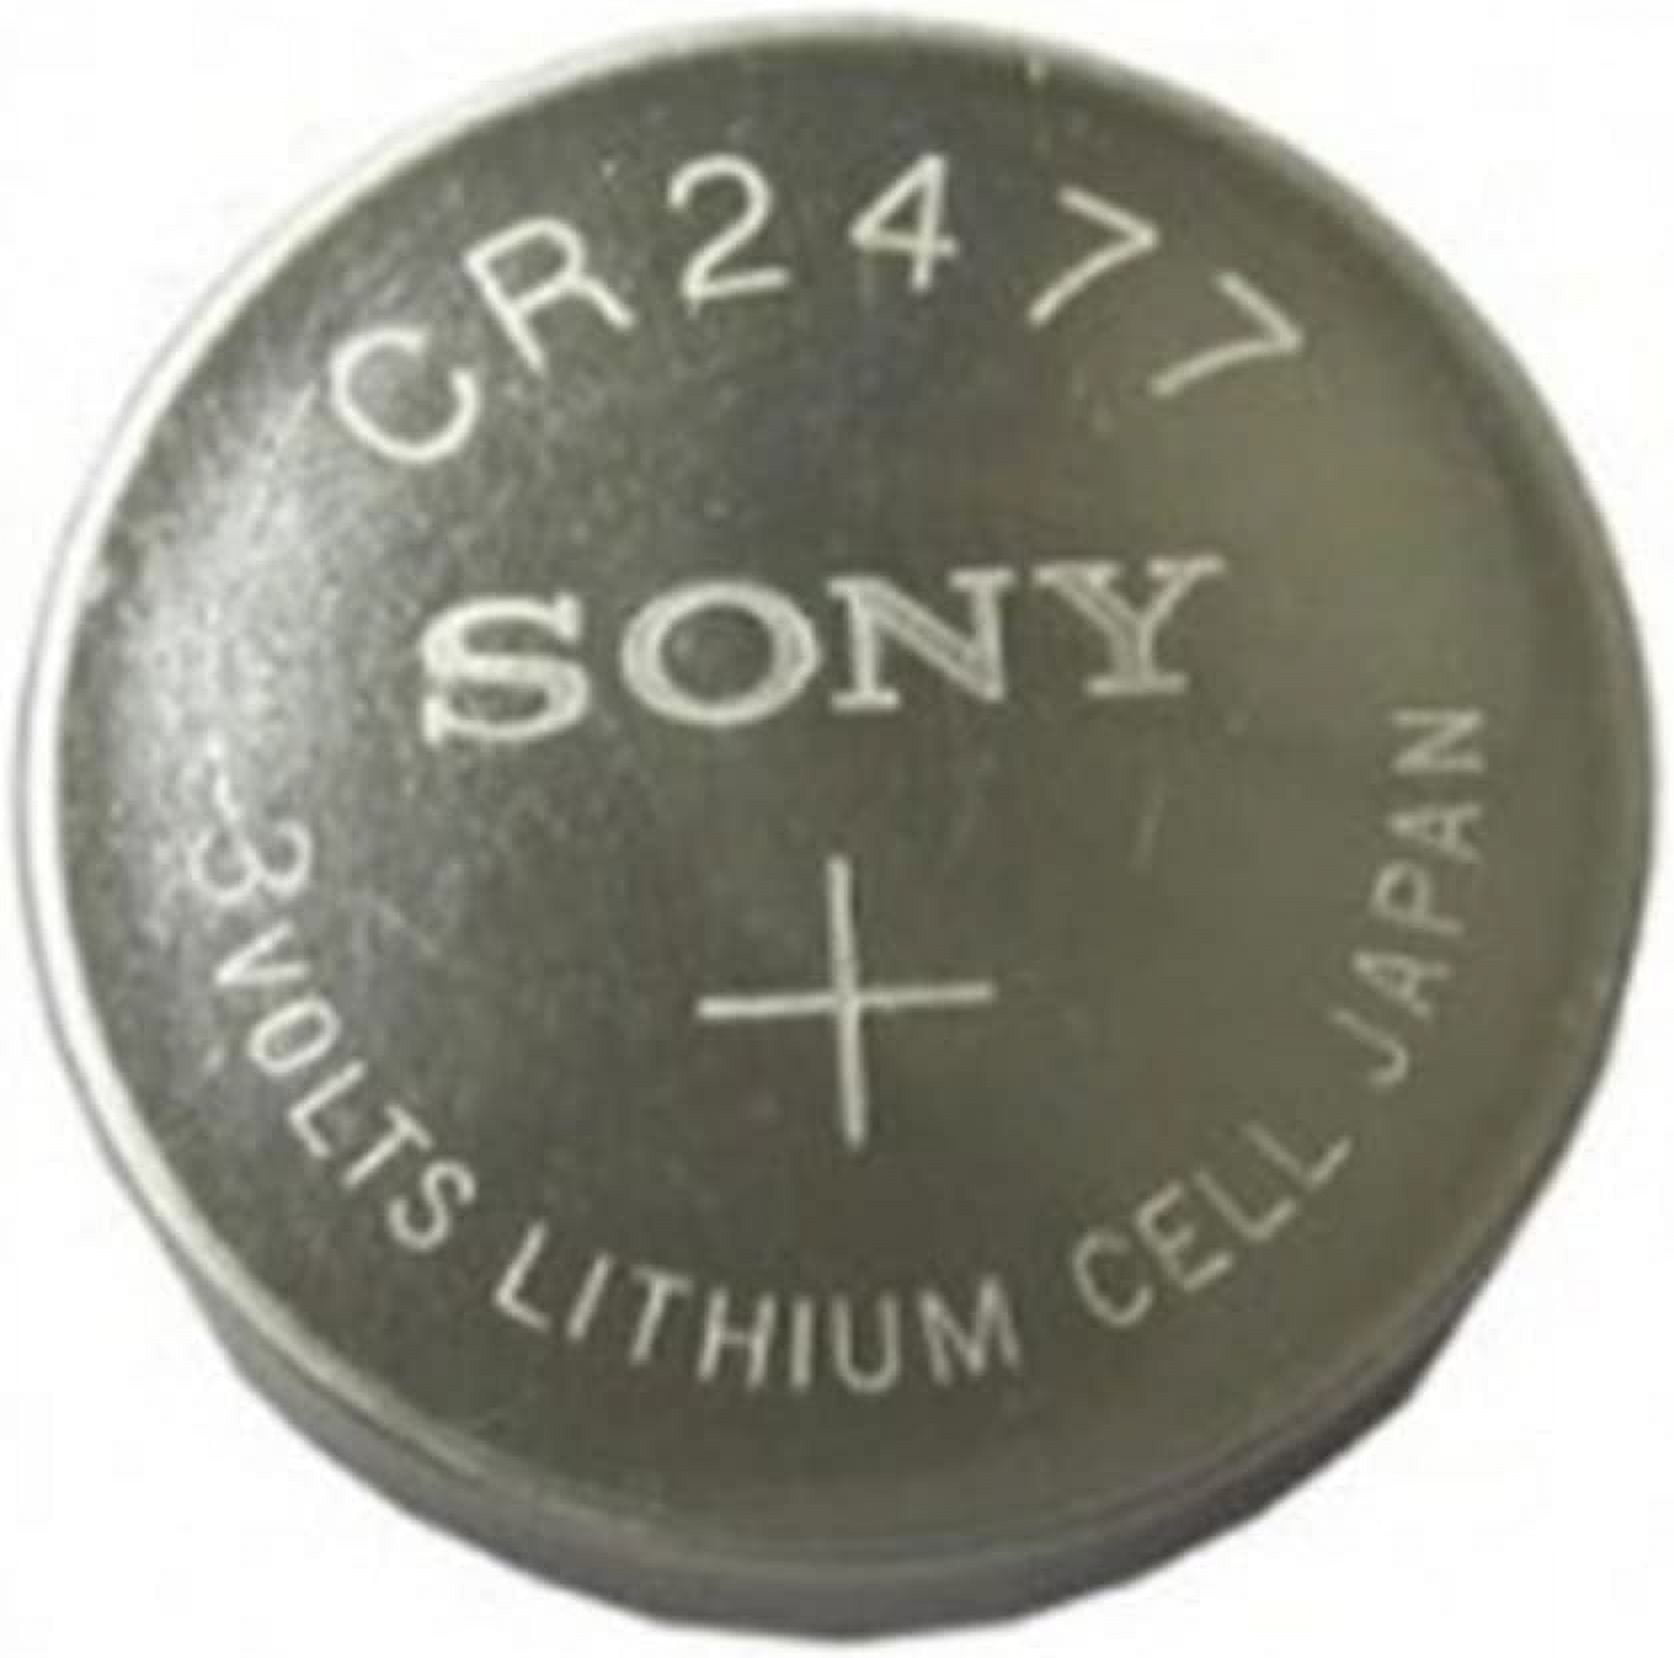 VALUE - CR2477 3v lithium battery